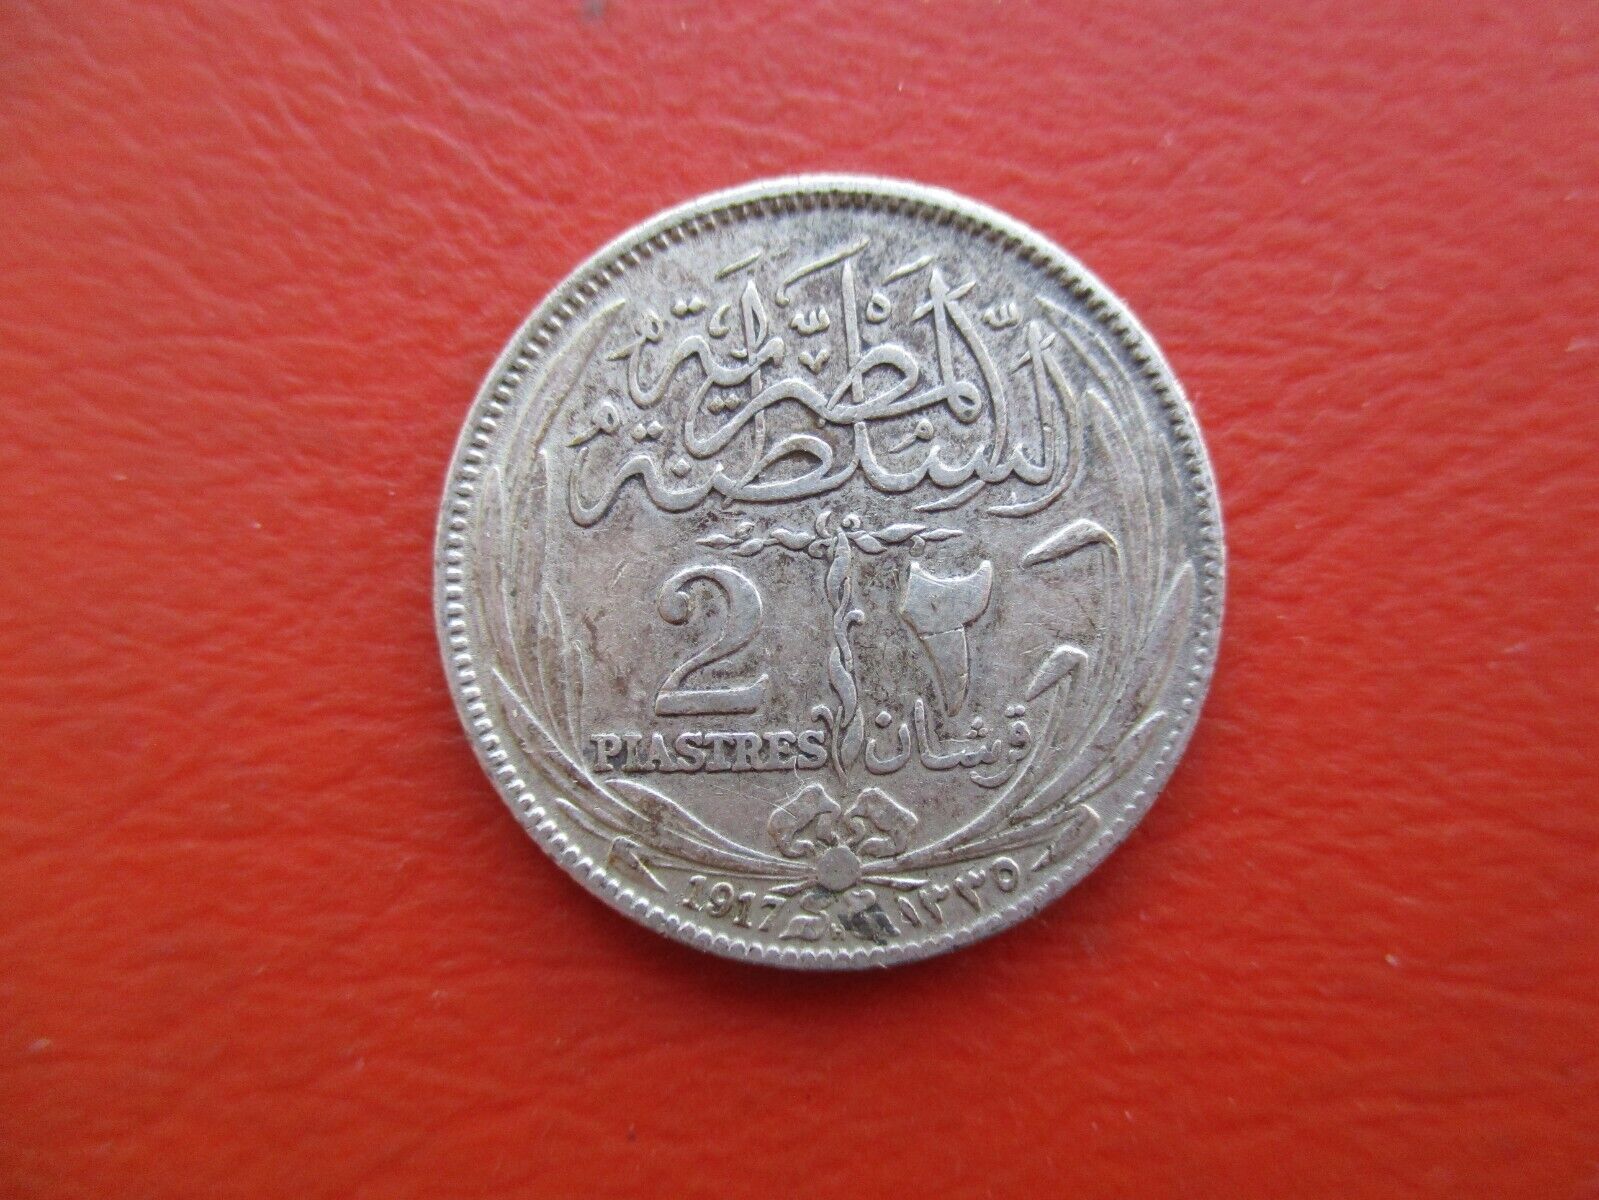 Egypt - 1917 - 2 piastres -  0.833 silver - good grade